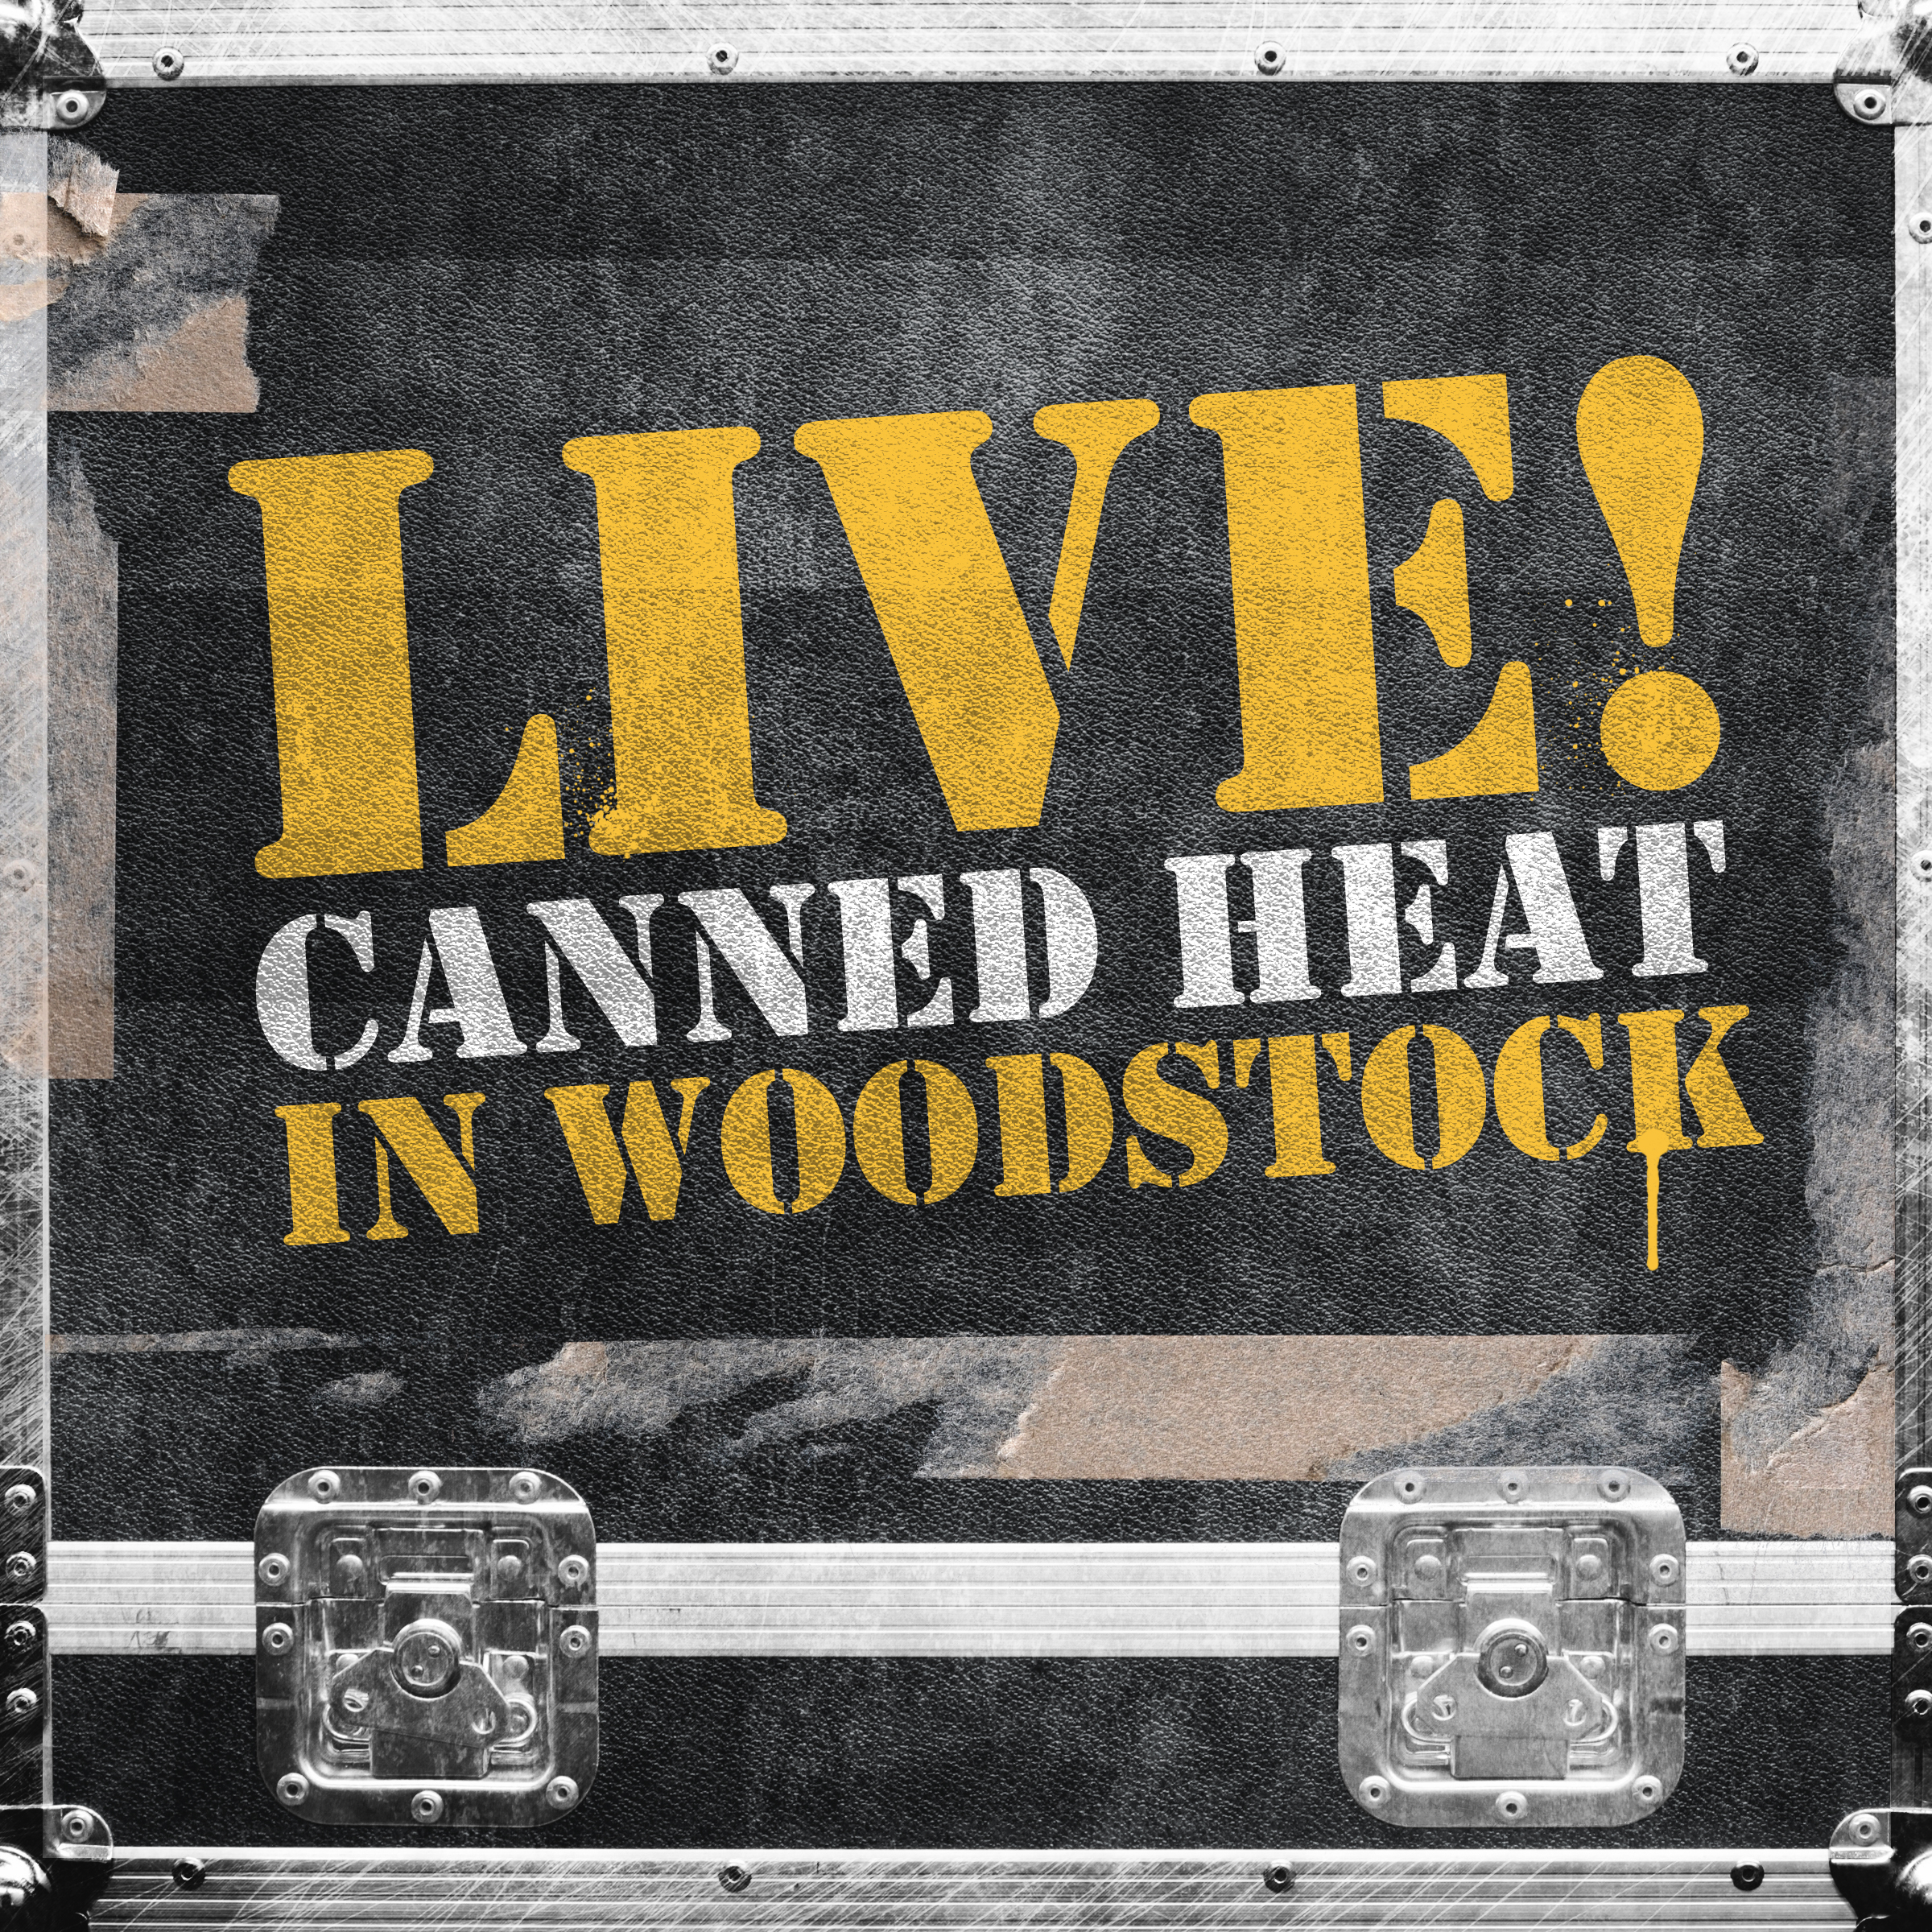 Live! in Woodstock